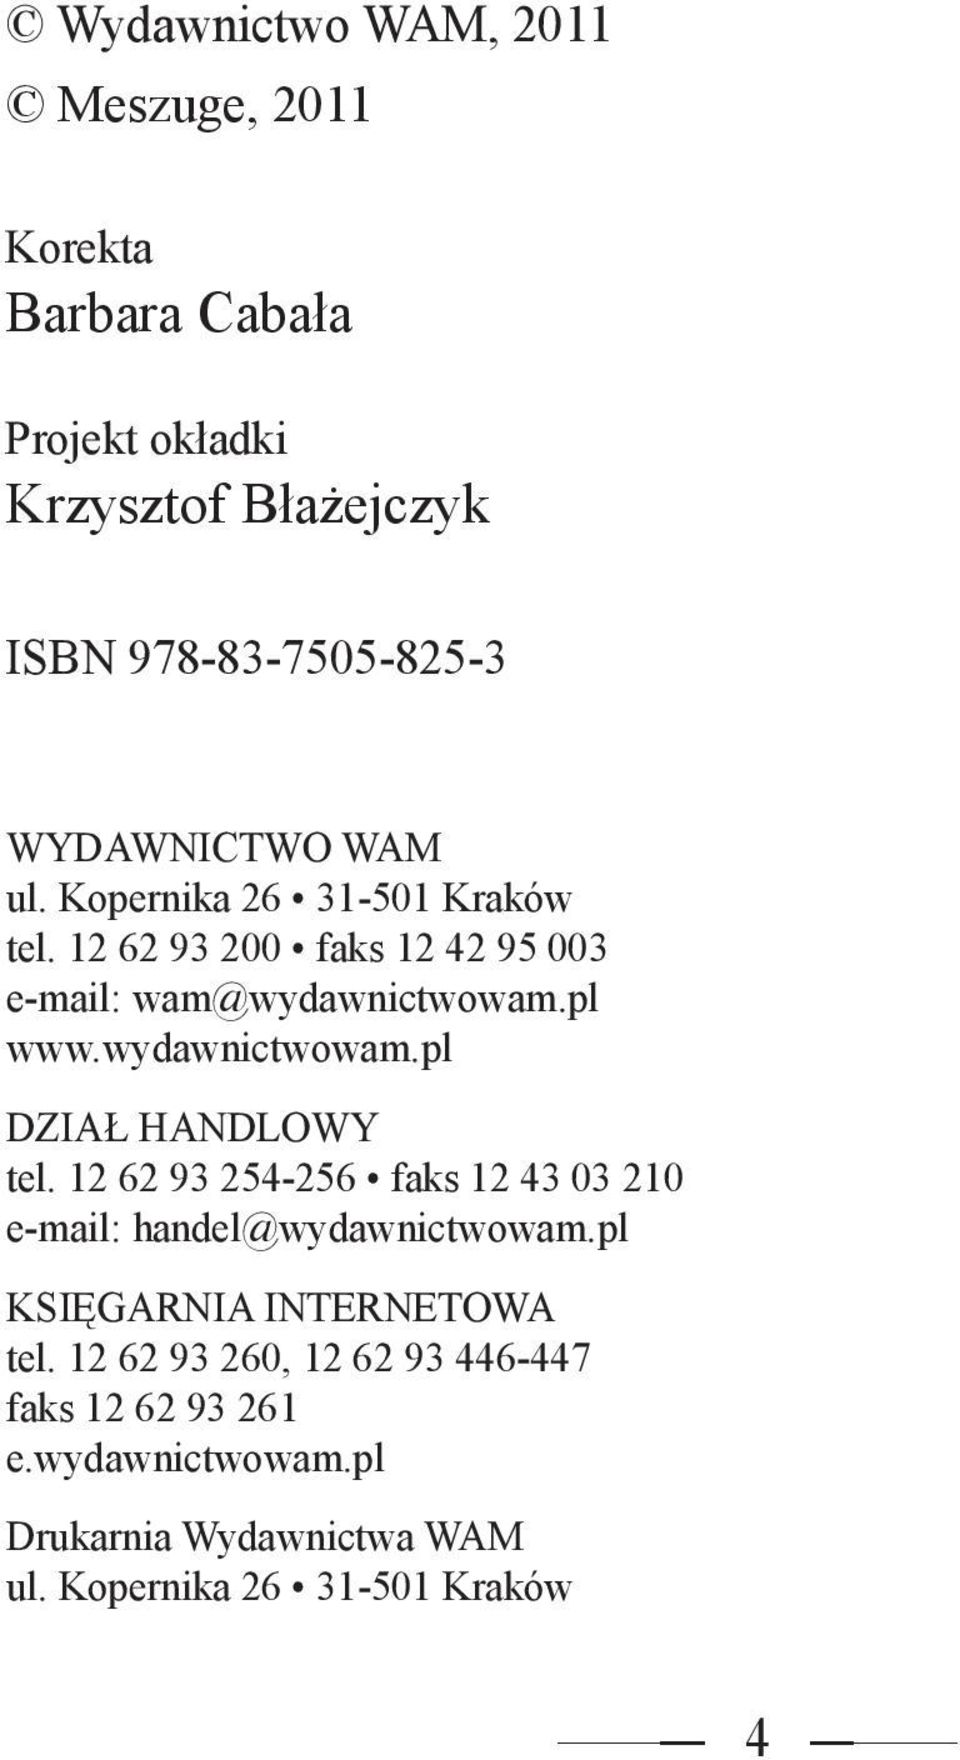 wydawnictwowam.pl DZIAŁ HANDLOWY tel. 12 62 93 254-256 faks 12 43 03 210 e-mail: handel@wydawnictwowam.